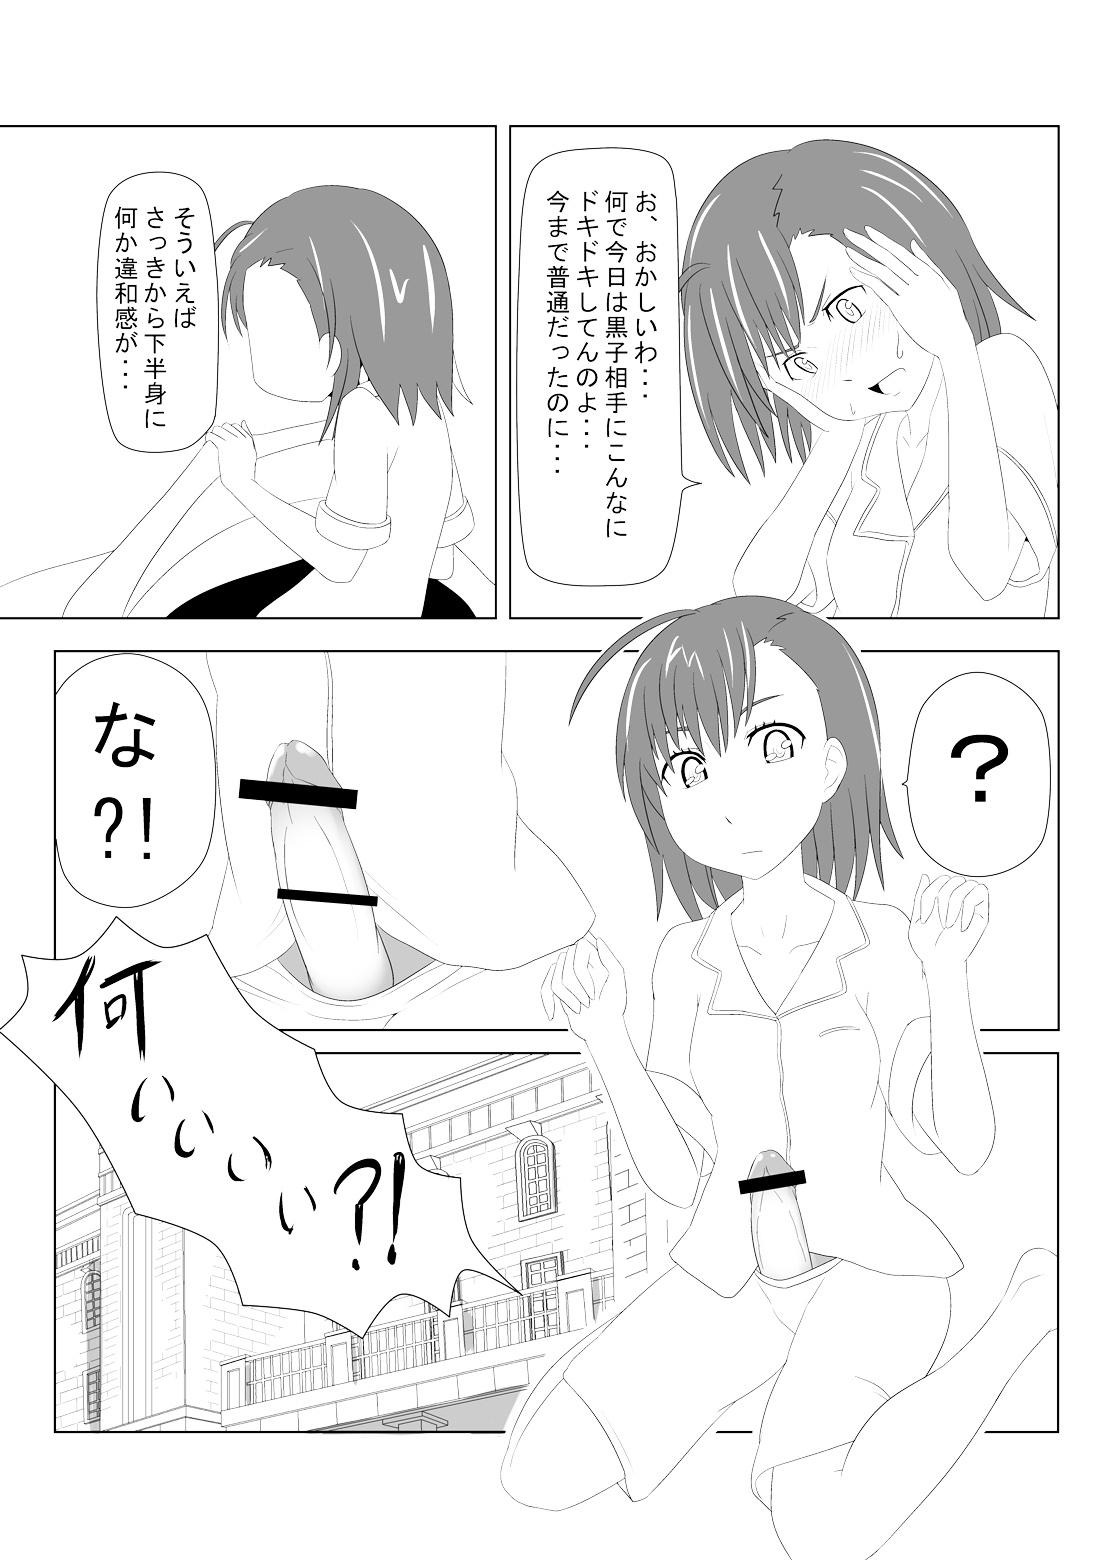 Cuminmouth Toaru Fuuki iin no Manabi Yori - Toaru kagaku no railgun Sextoys - Page 7